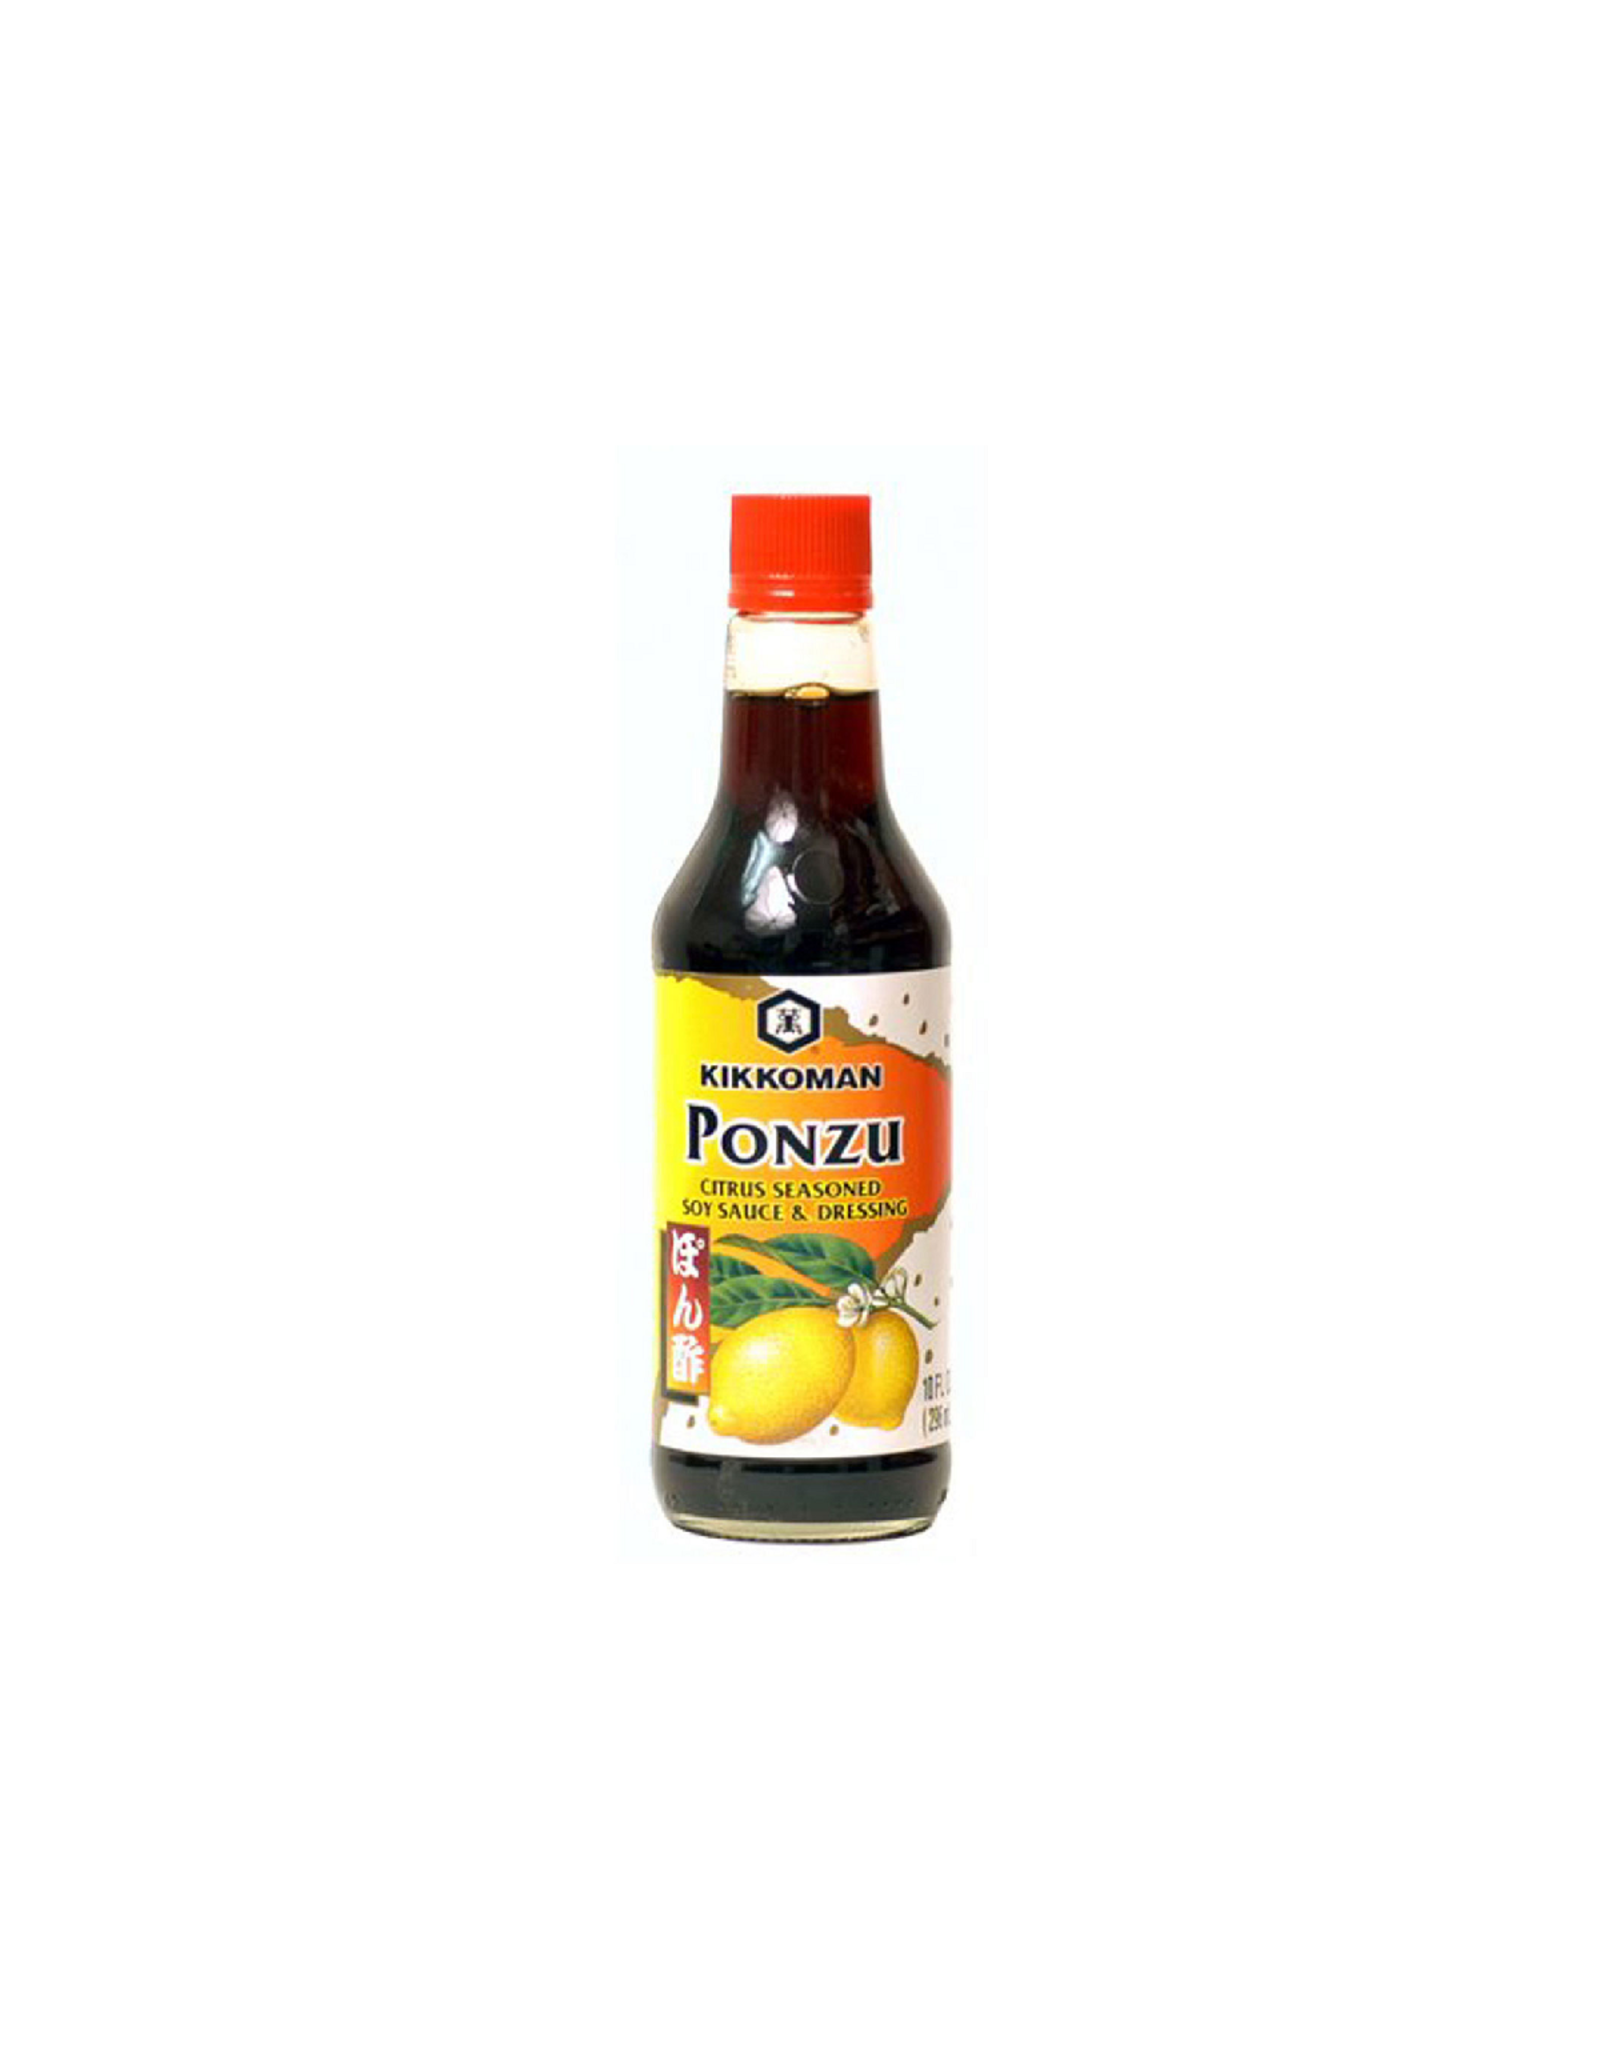 Kikkoman Ponzu | Lemon-Soy Sauce